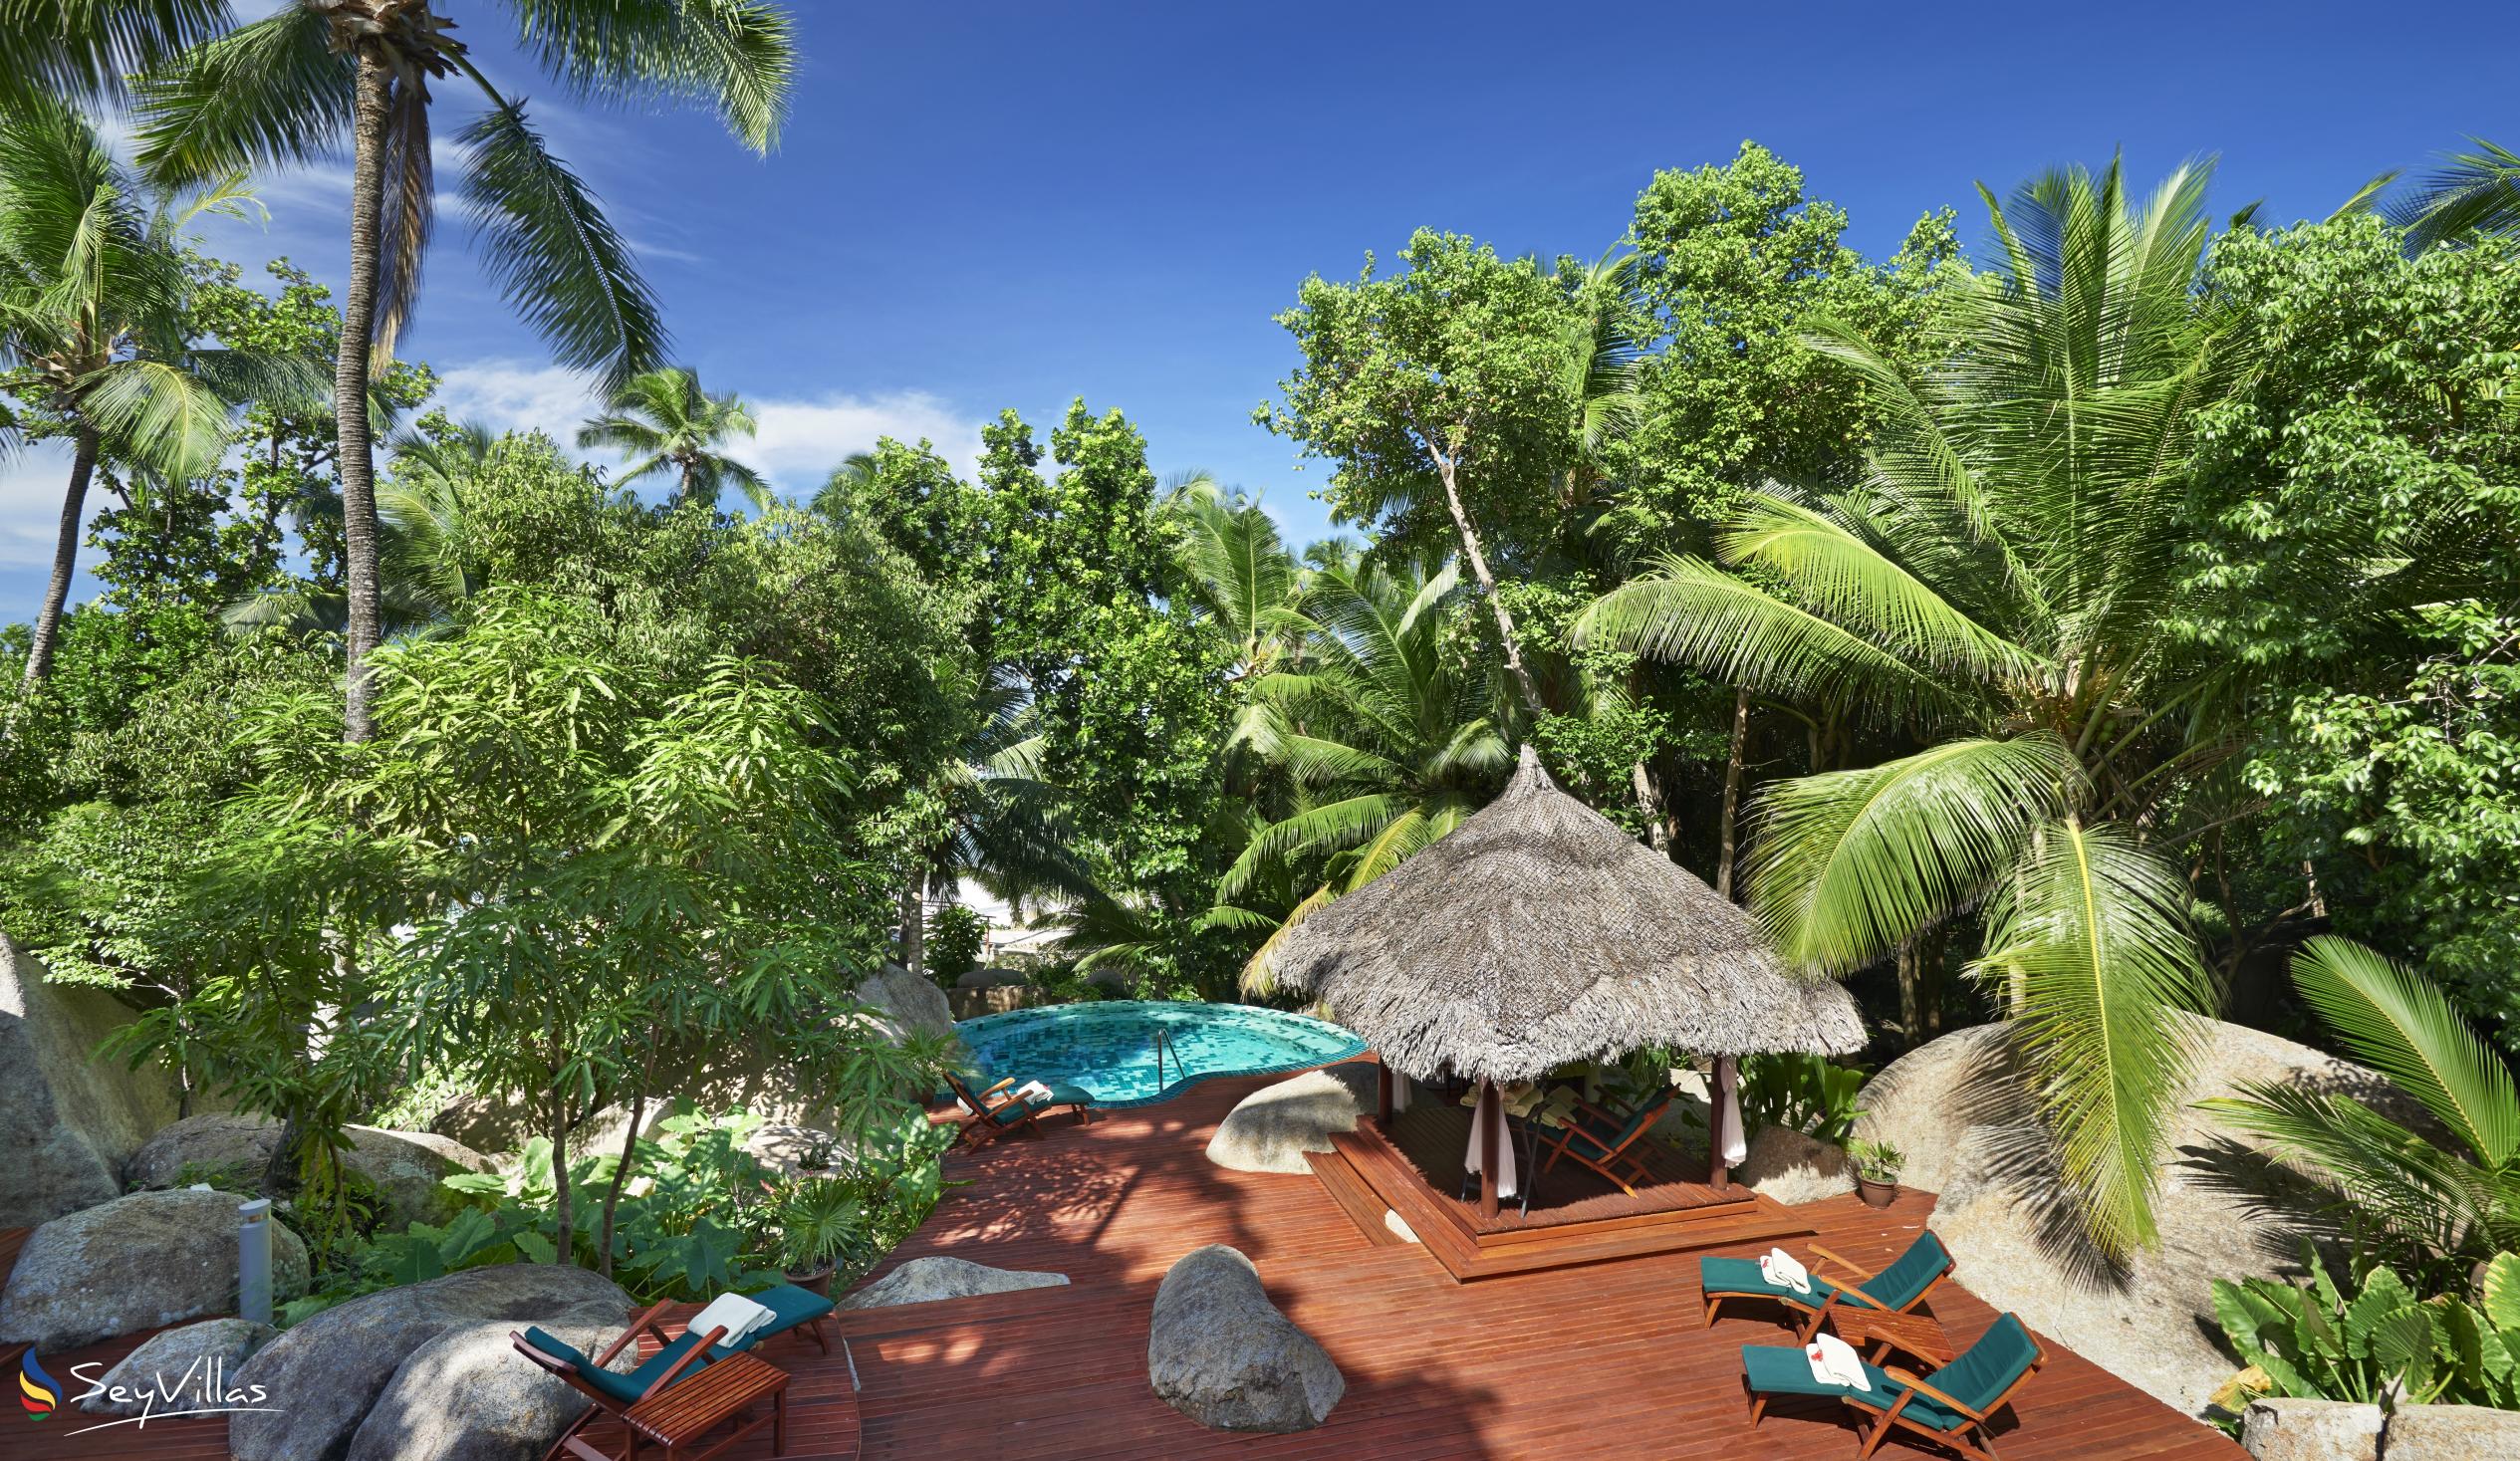 Foto 10: Hilton Seychelles Labriz Resort & Spa - Aussenbereich - Silhouette Island (Seychellen)